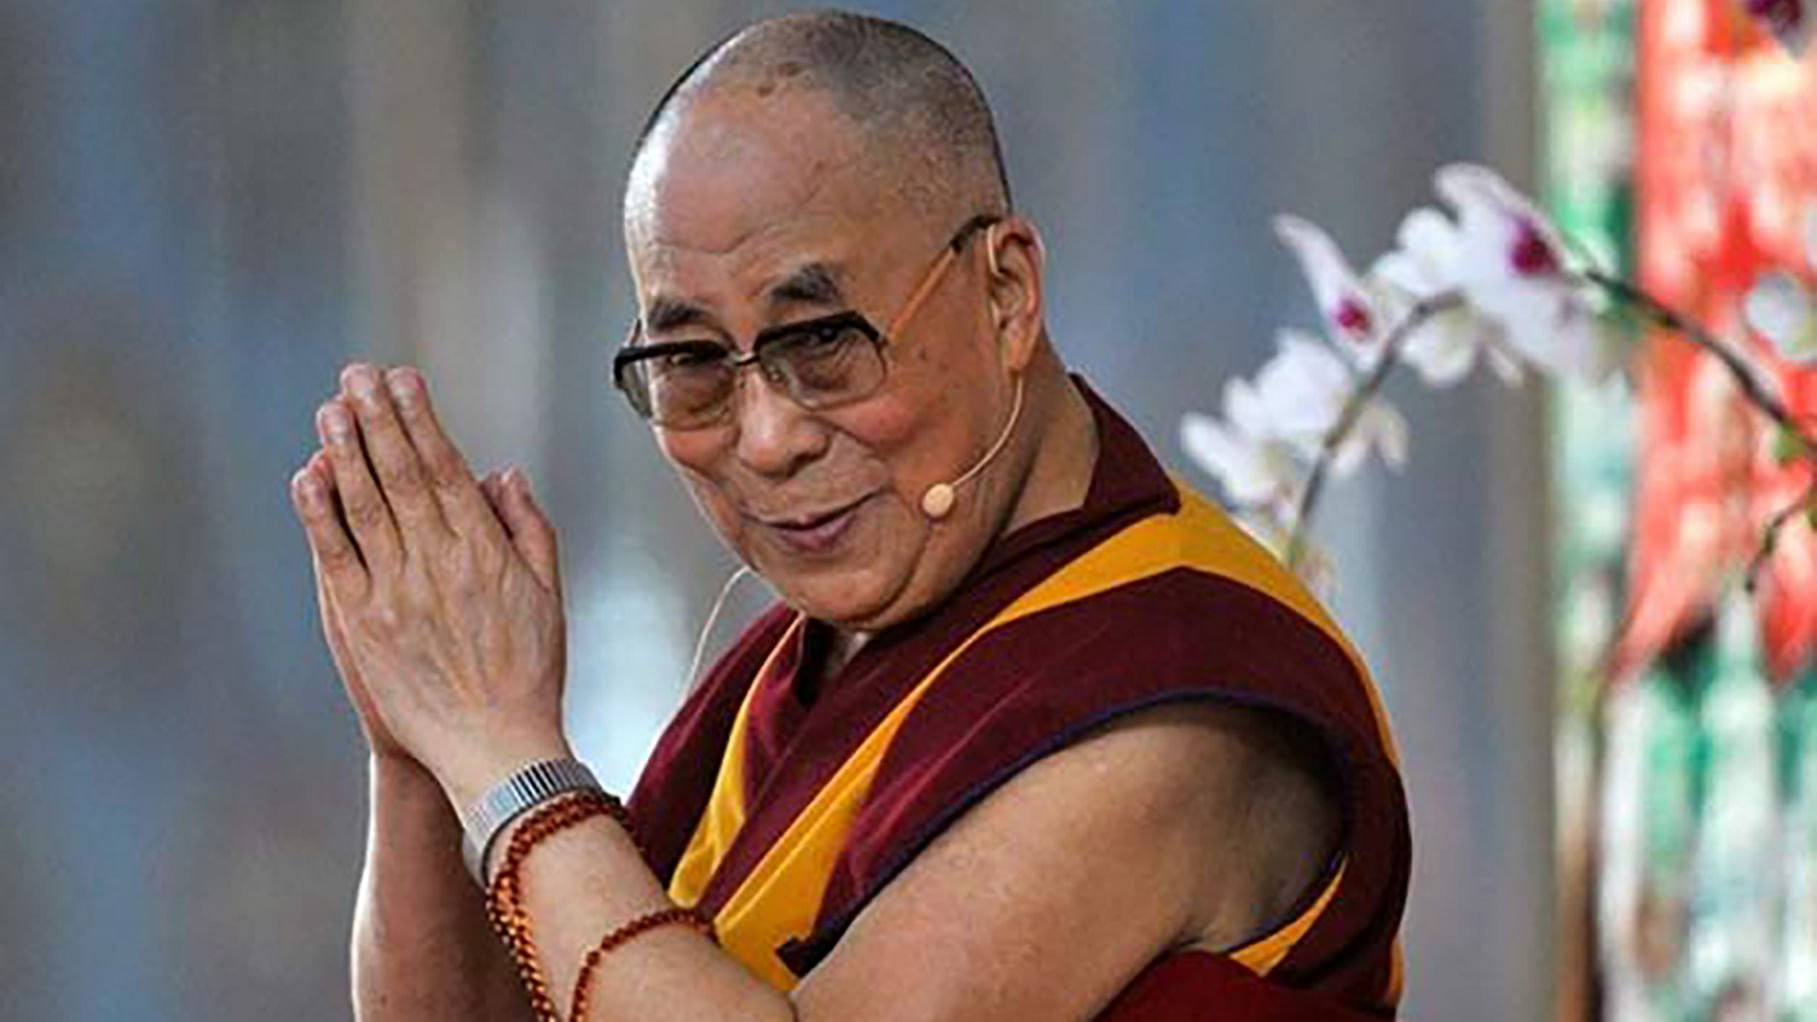  The Dalai Lama.&nbsp;